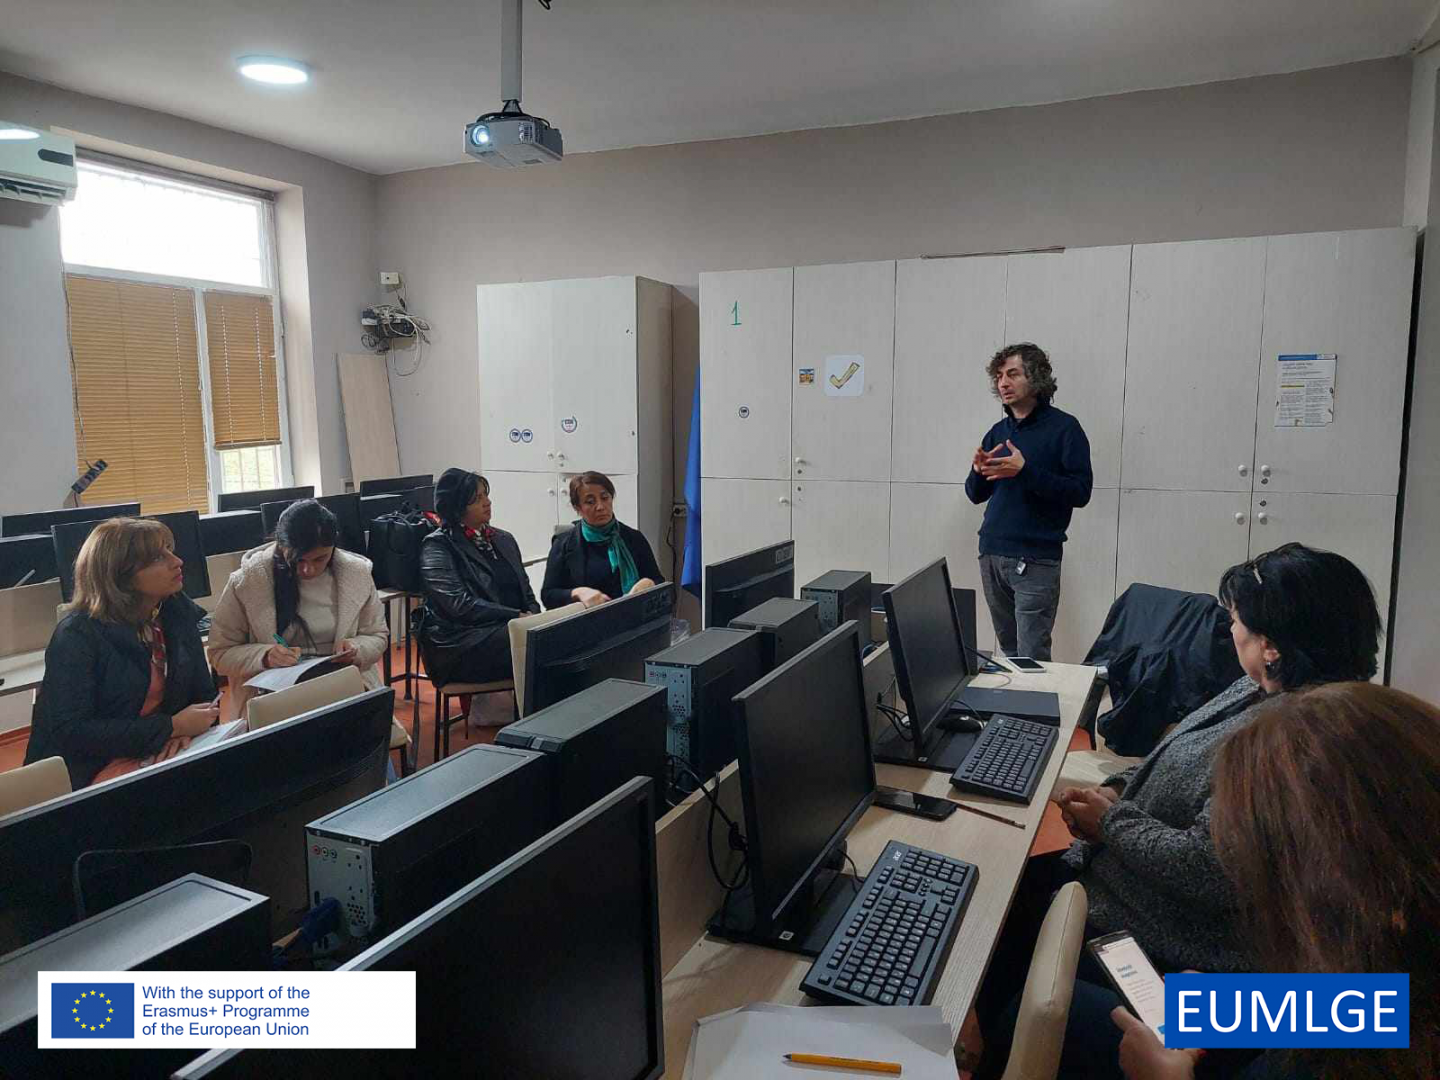 მედიაწიგნიერების ევროპული მოდელების ინტეგრირება ქართულ აკადემიურ სფეროში, შეხვედრები სკოლის მასწავლებლებთან 